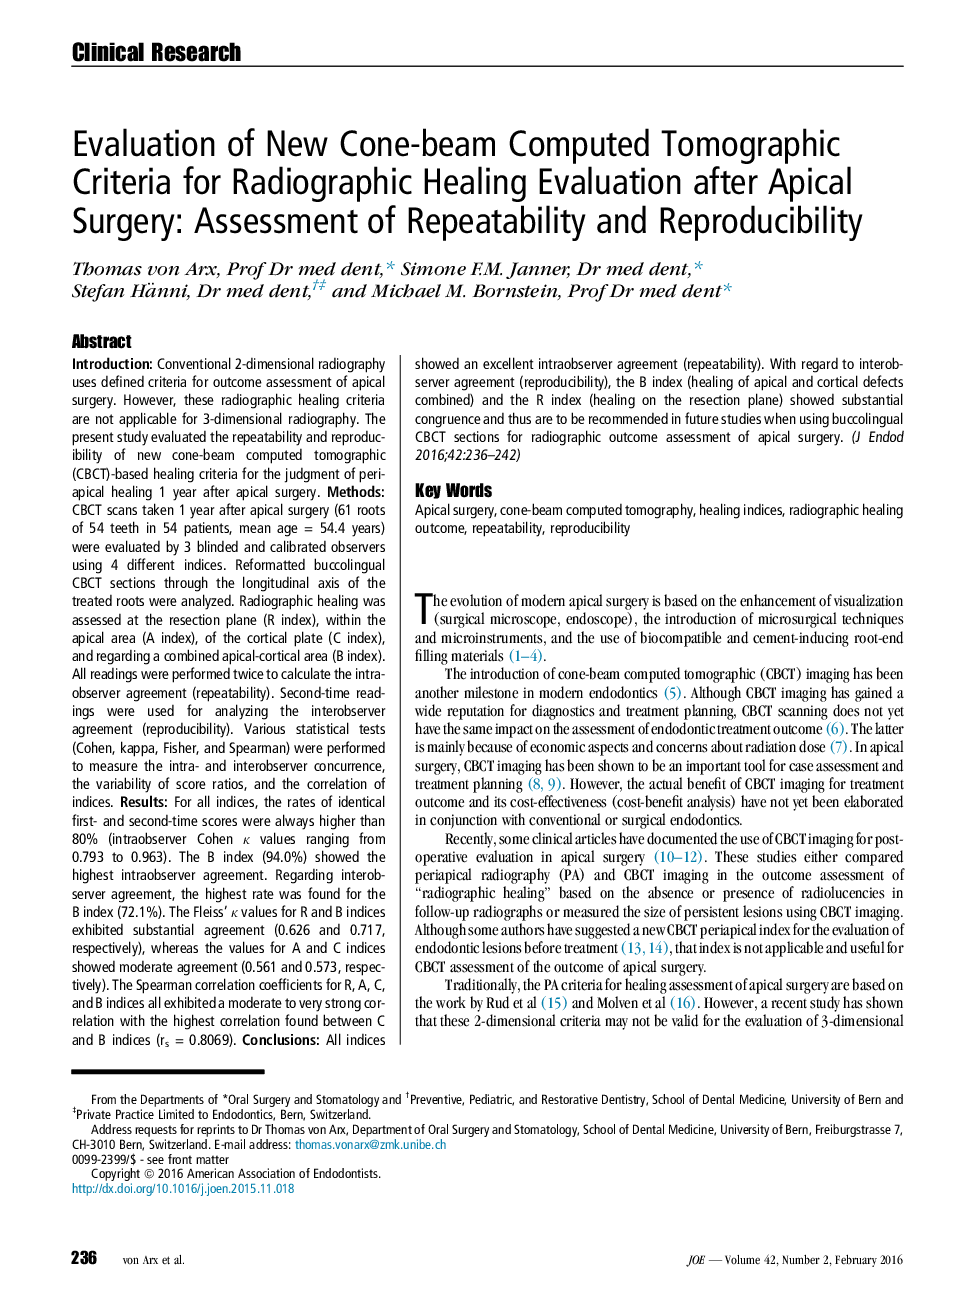 ارزیابی معیارهای توموگرافی محاسبه شده با تراکم کمان برای ارزیابی بهبود شیمیدرمانی بعد از عمل جراحی آپیکال: ارزیابی تکرارپذیری و بازتوزیع پذیری 